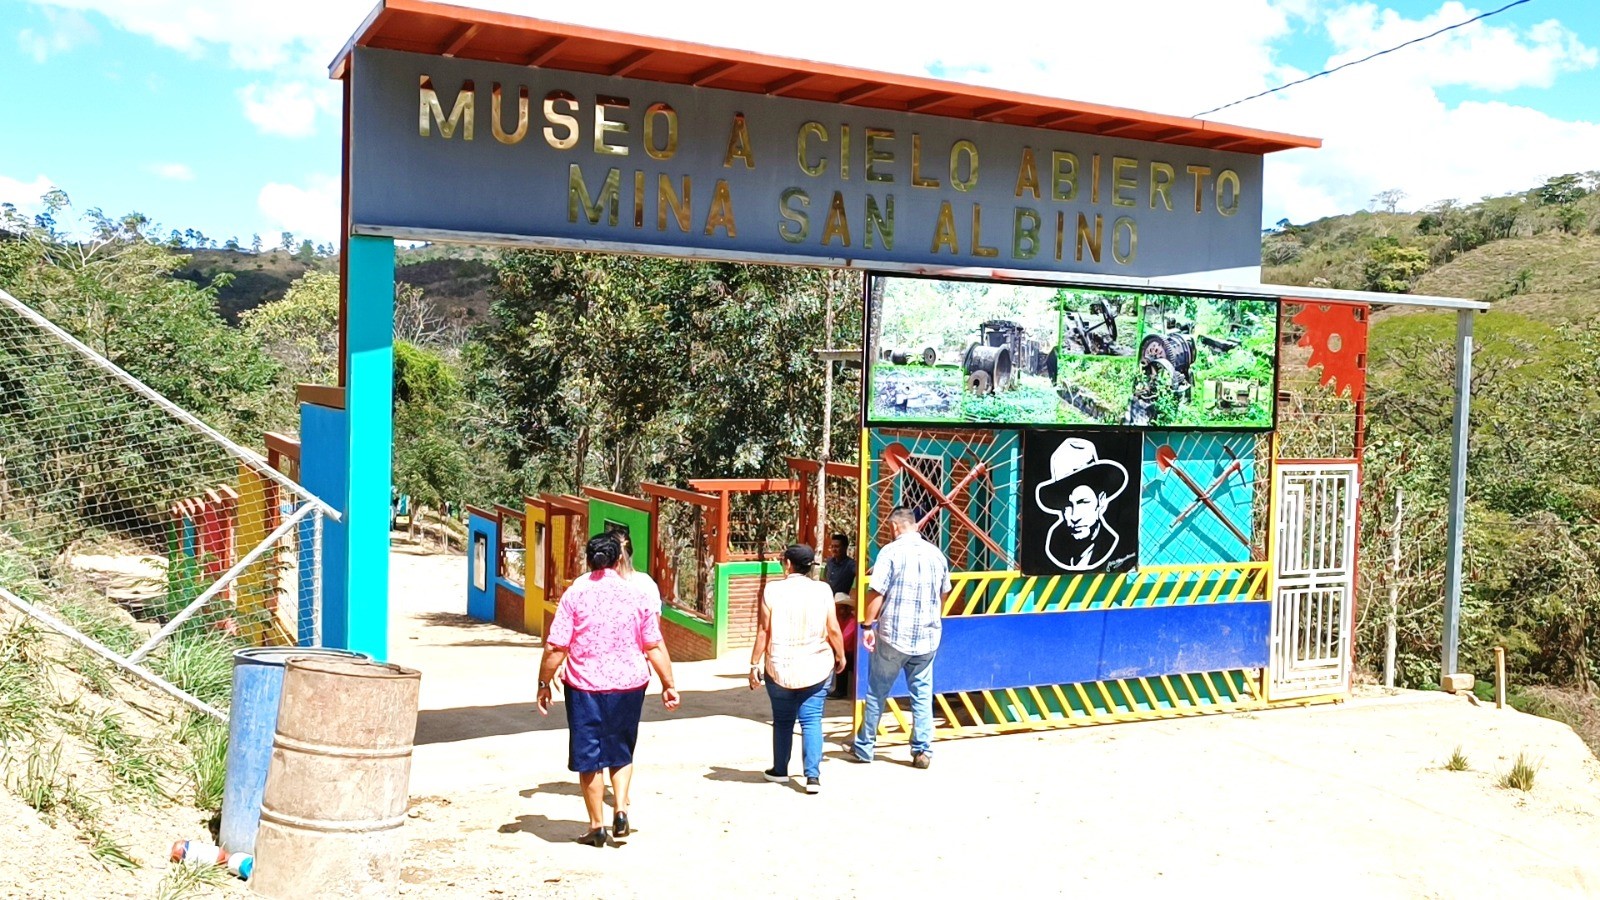 Gesta de Sandino vive en el museo A Cielo Abierto Mina San Albino Managua. Radio La Primerísima